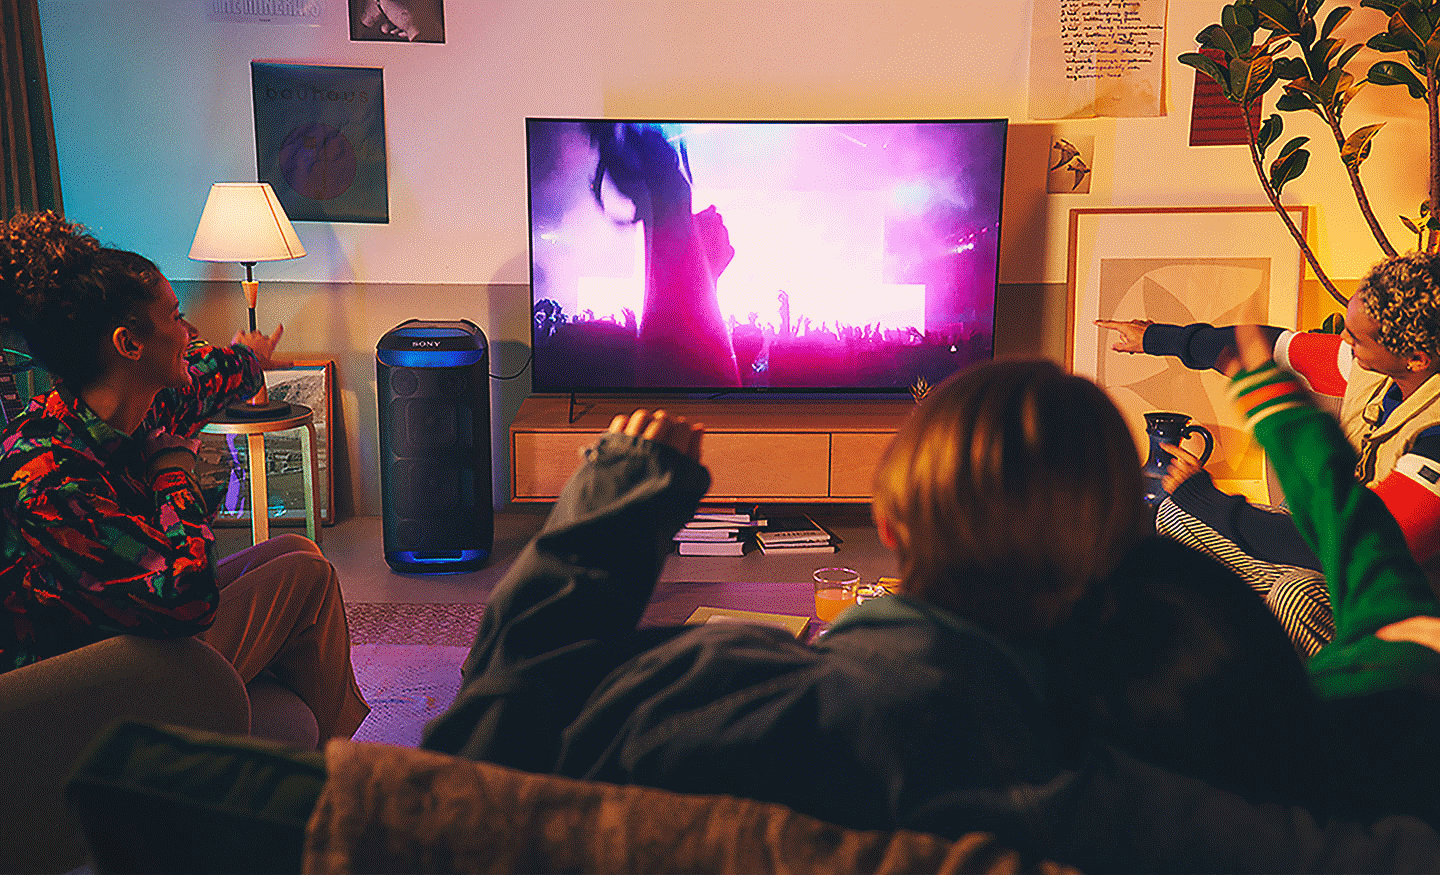 ภาพผู้คนในห้องนั่งเล่นที่กำลังชมคอนเสิร์ตในทีวีพร้อมด้วยลำโพง SRS-XV800 ที่มีแสงรอบข้างสีฟ้าอยู่ข้างๆ